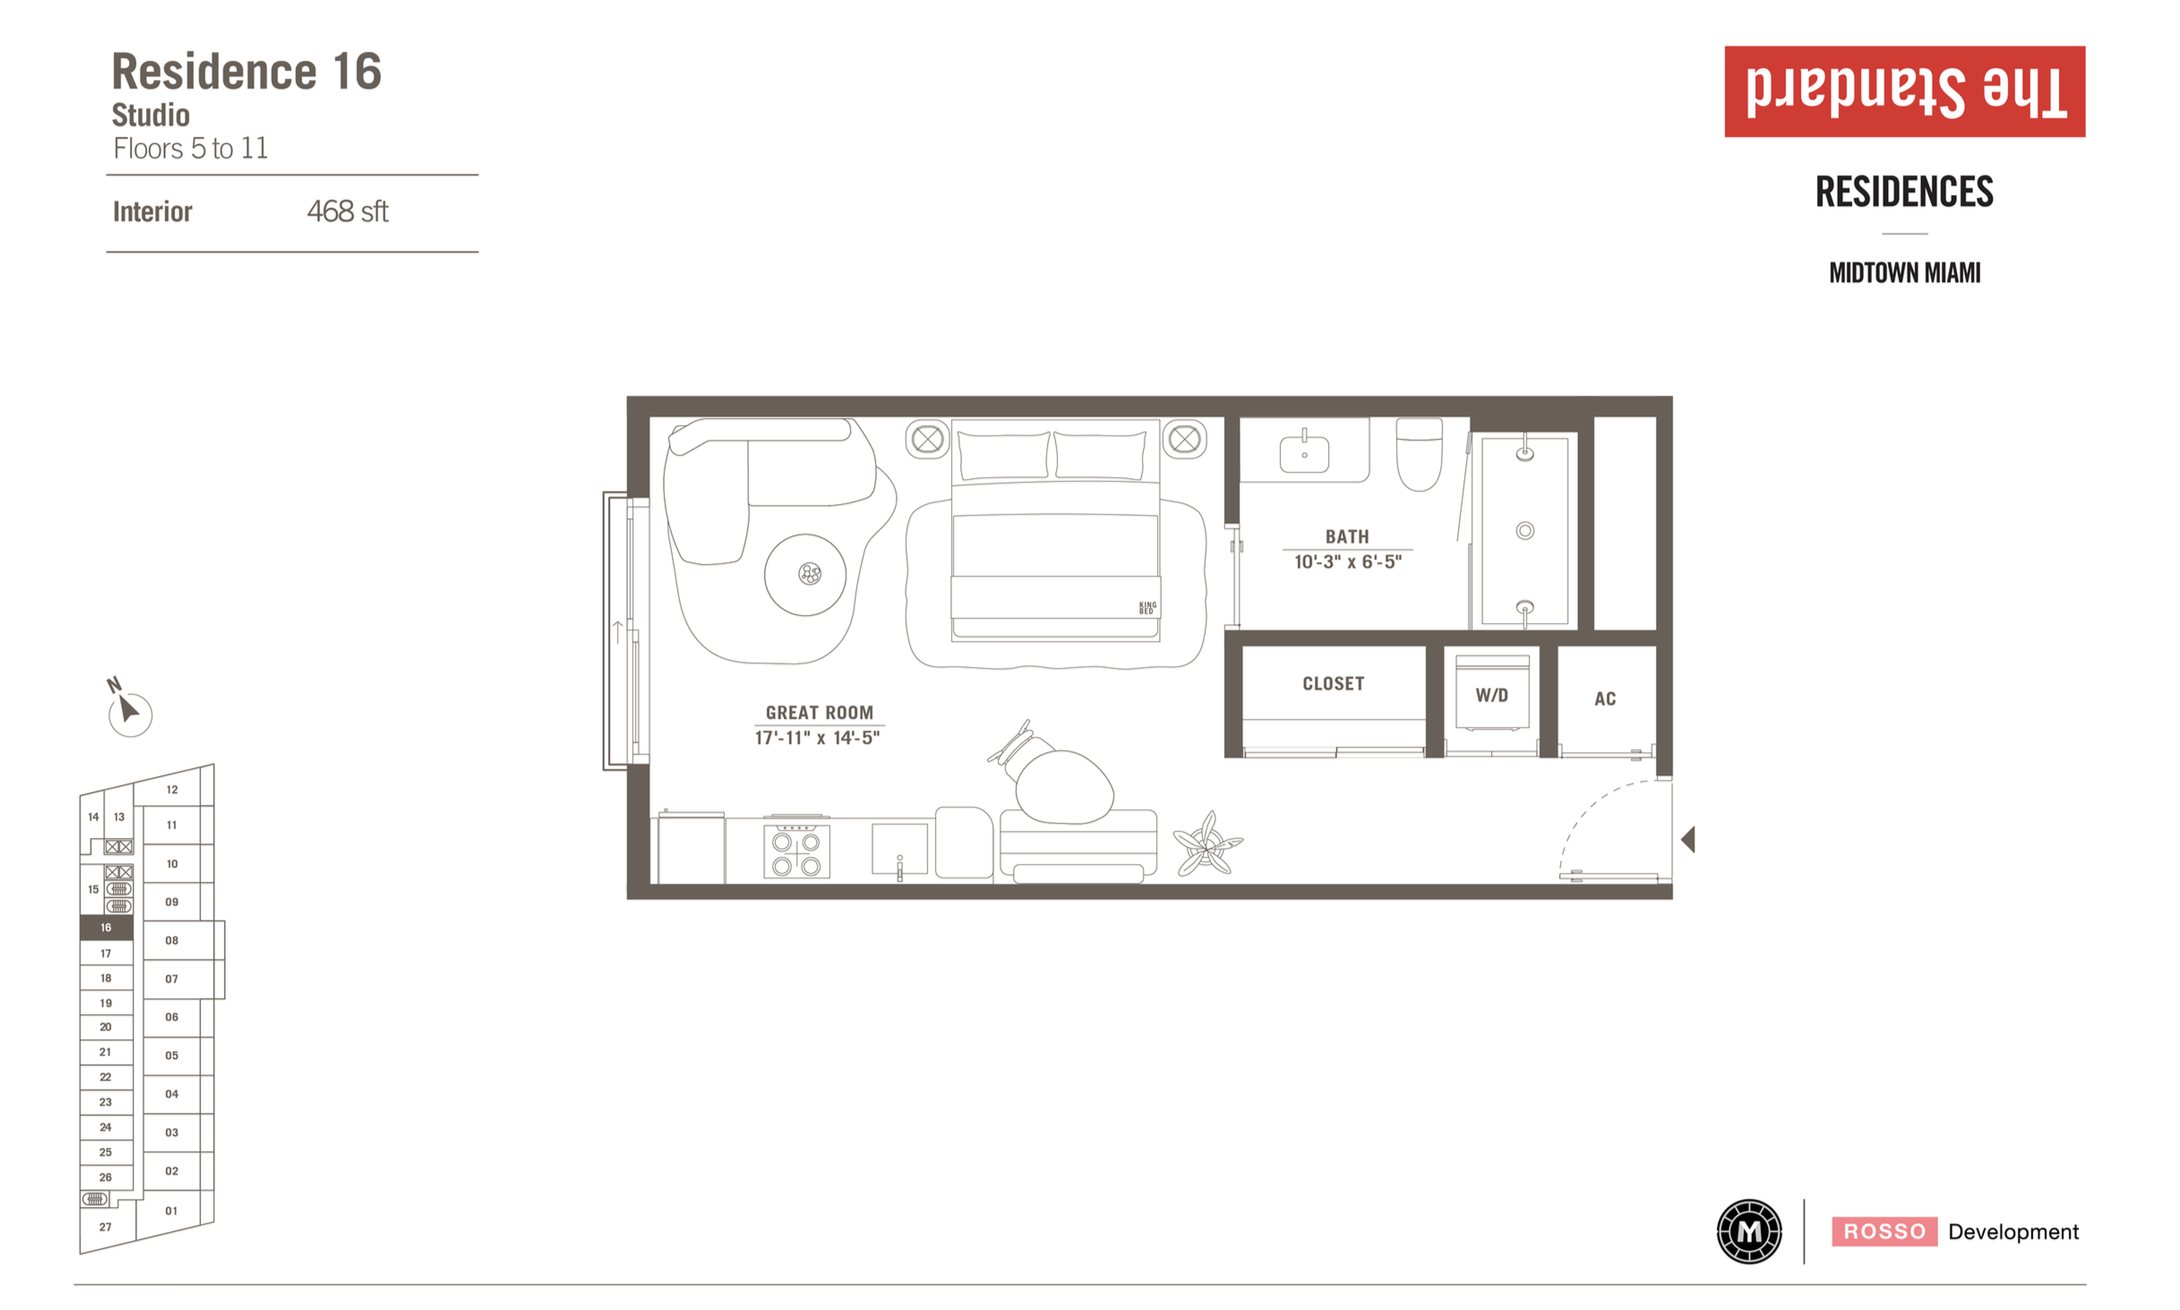 The Standard Residences | Residence 16 | Studio | 468 SF | Floor 5-11